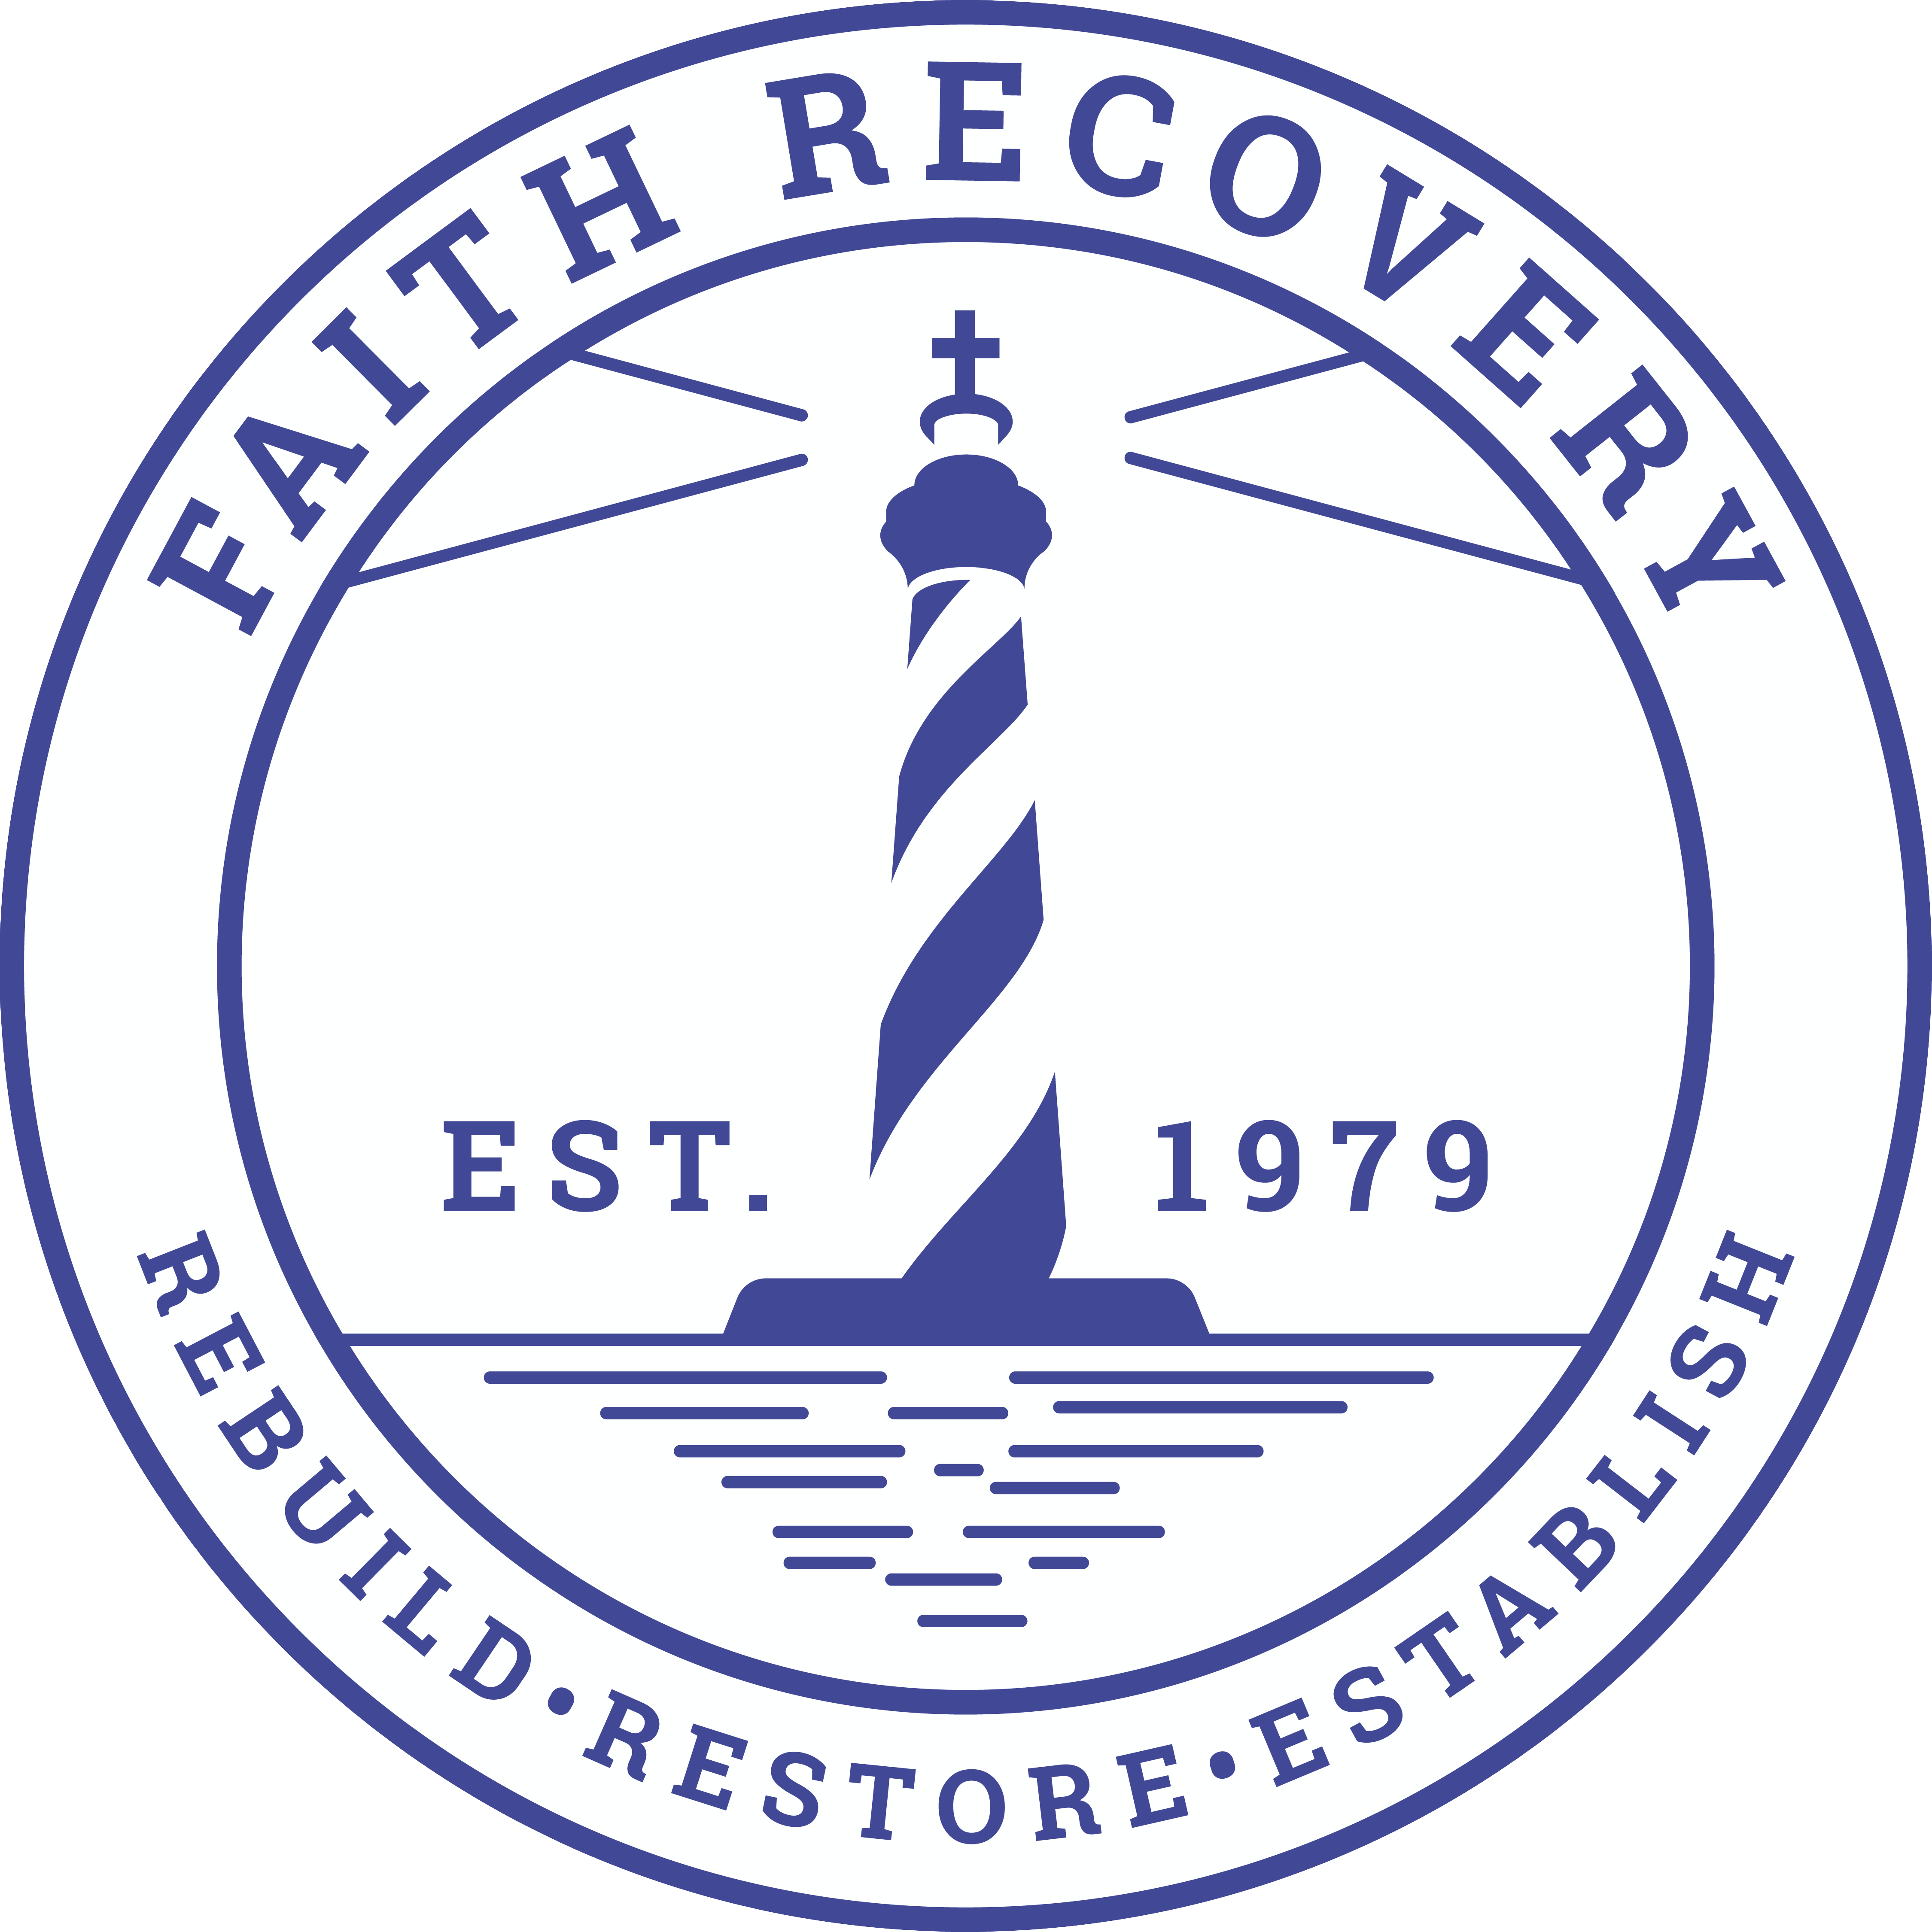 FaithRecovery-PANTONE-UNCOATED-Logo-Blue